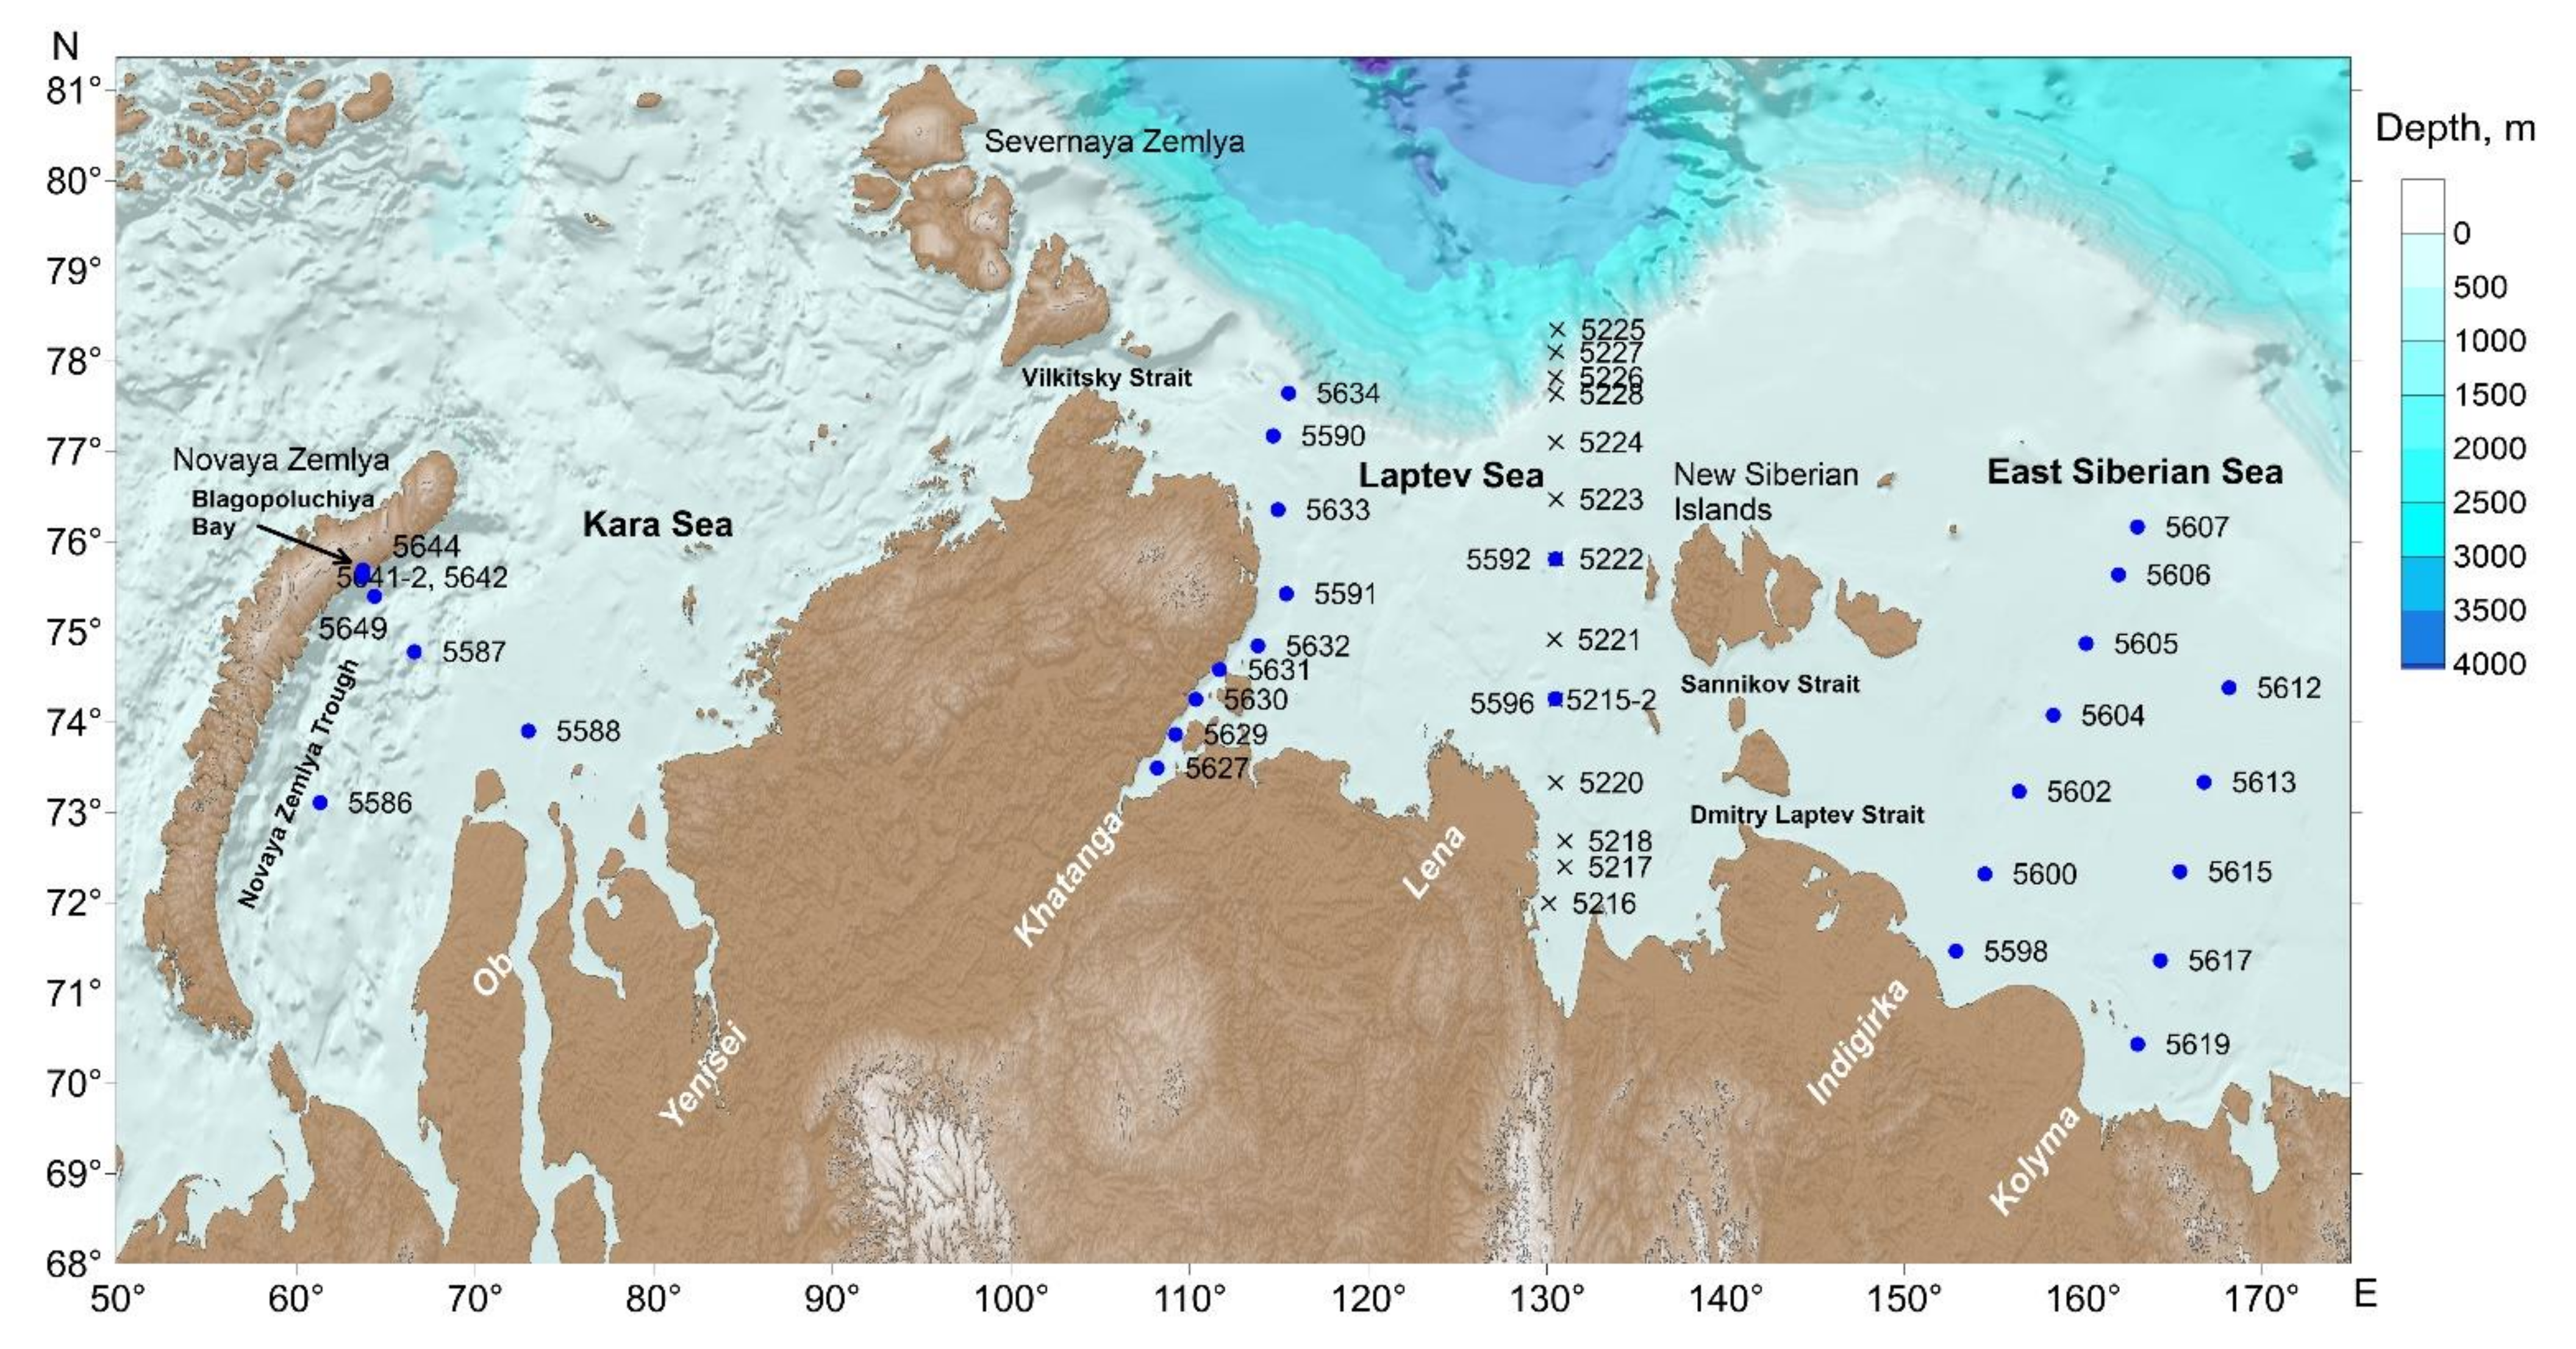 Зона расположена вдоль побережья северного ледовитого океана. Карта льдов Северного Ледовитого океана. Карта Северного Ледовитого океана со спутника. Воды Северного моря карта. Изучение шельфа Северного Ледовитого океана.